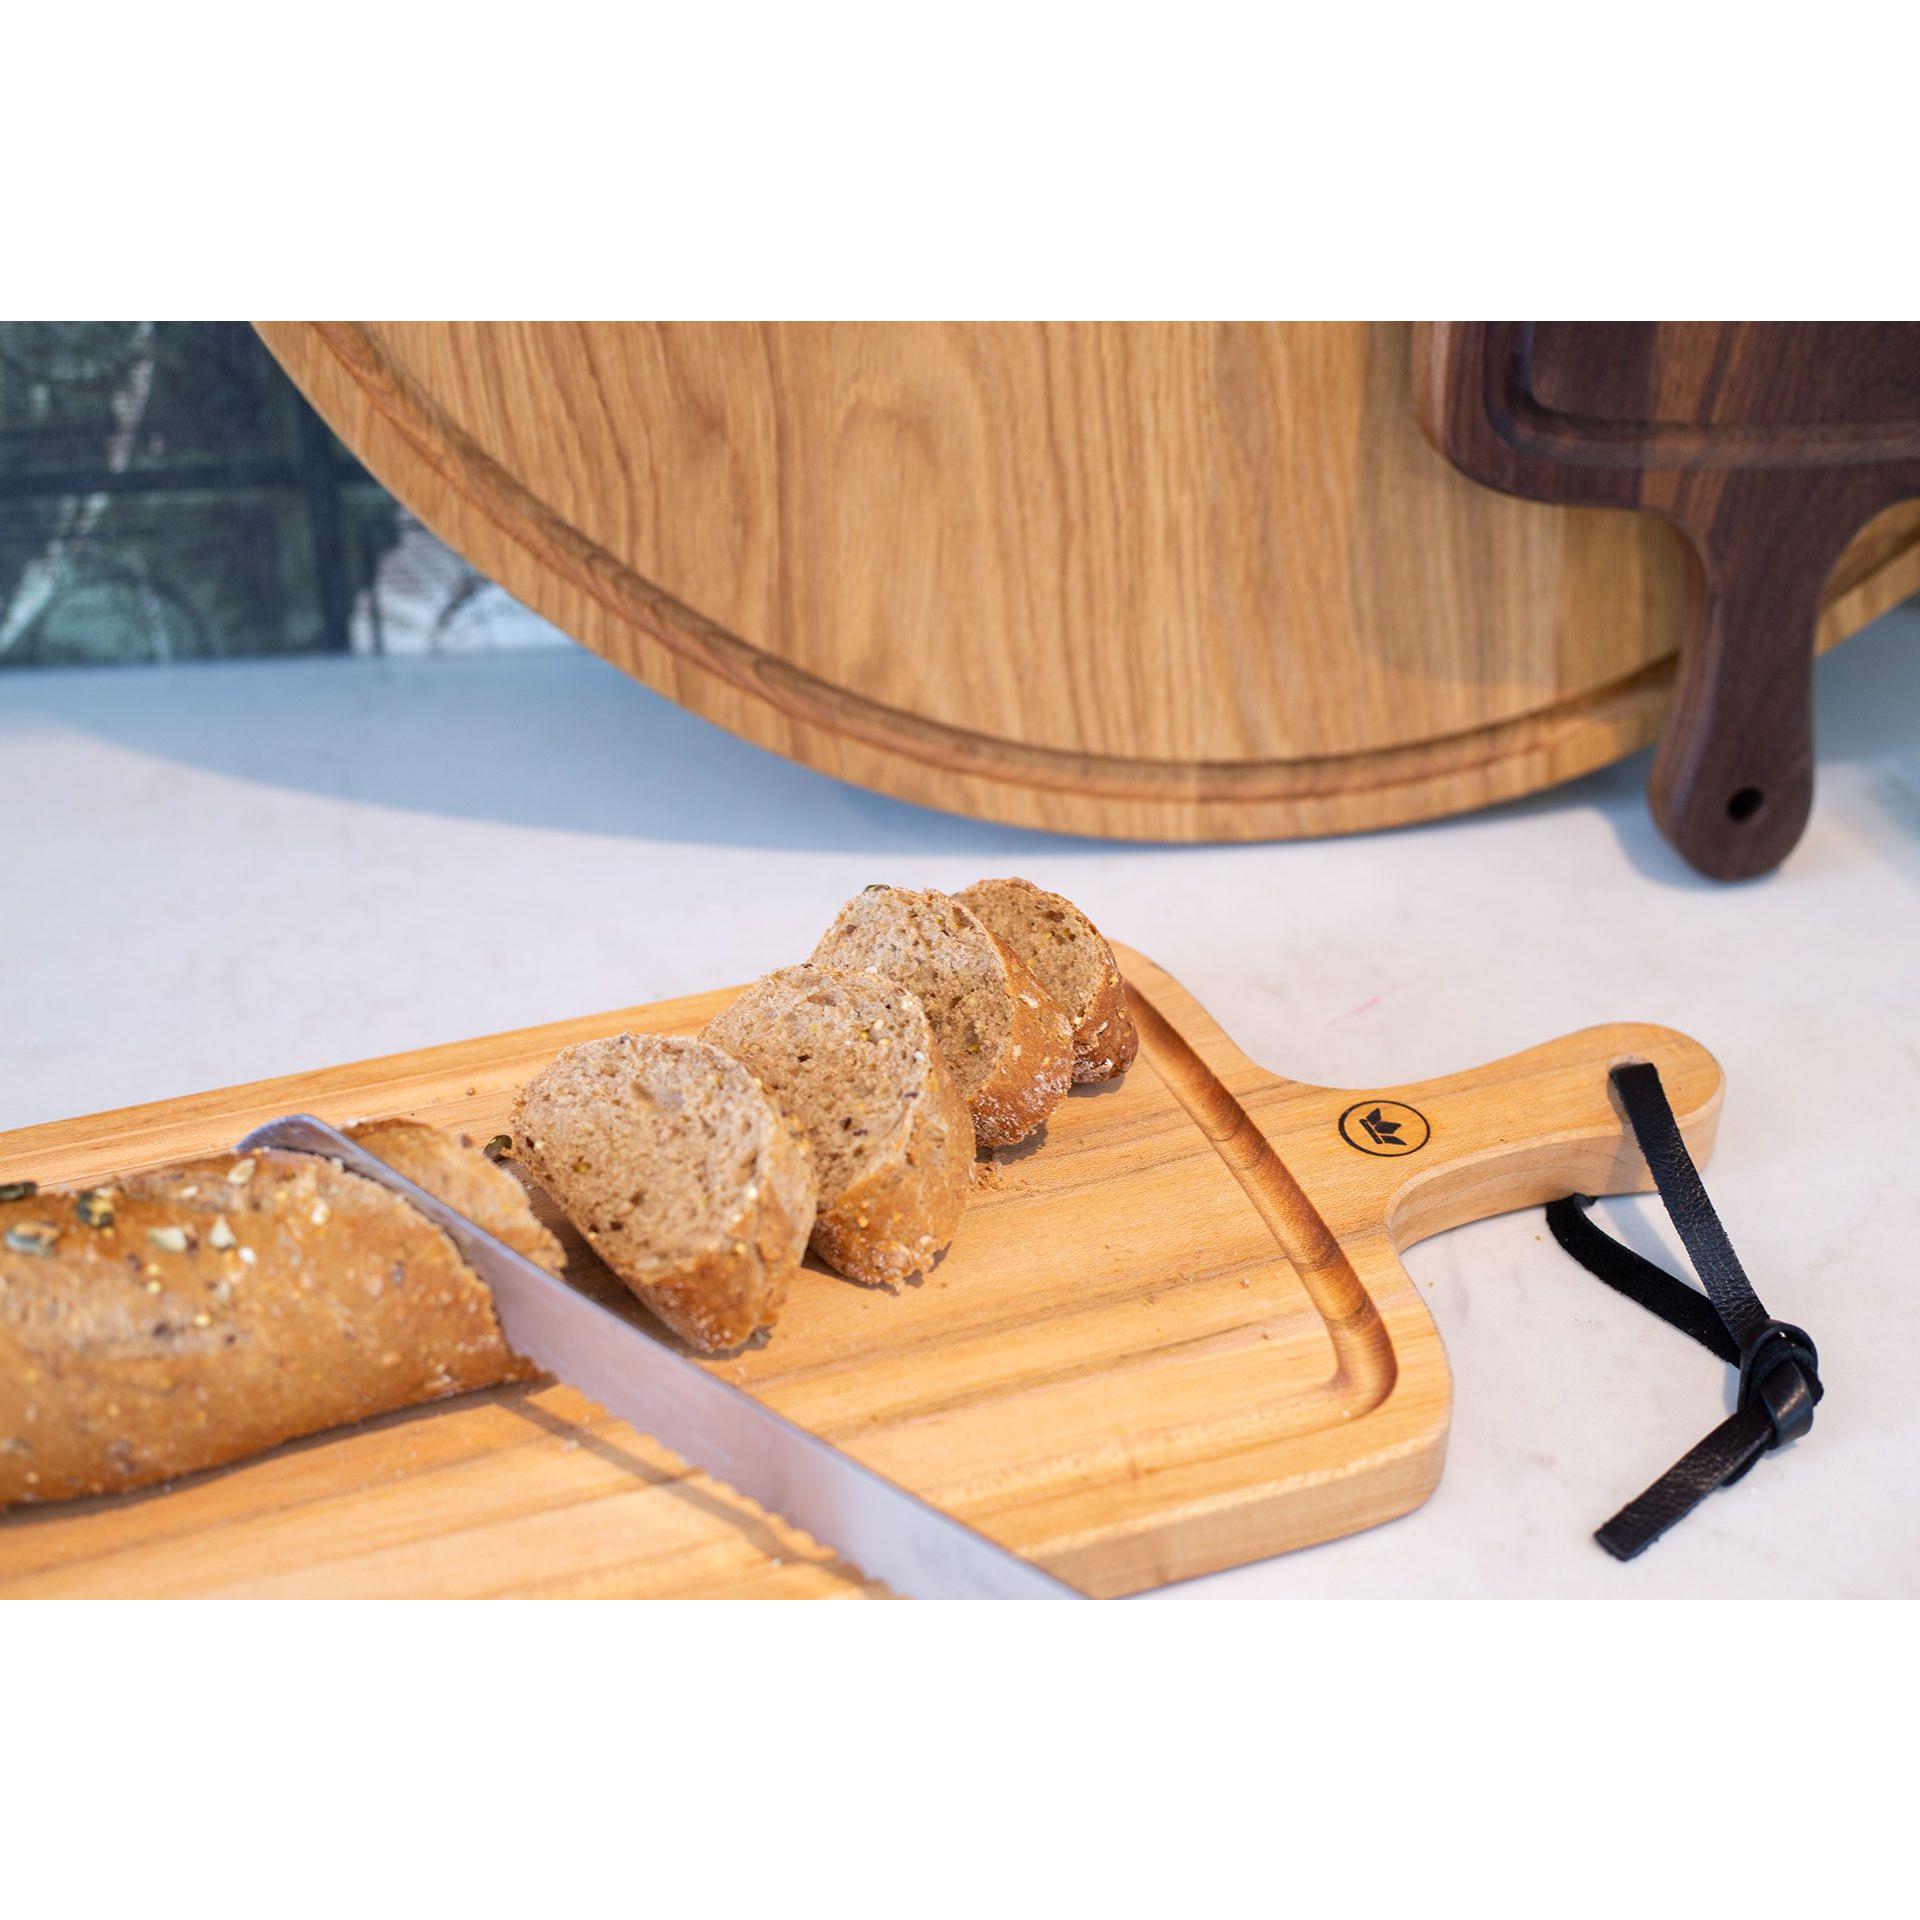 Dutchdeluxes Bread Board XL con rayas, roble